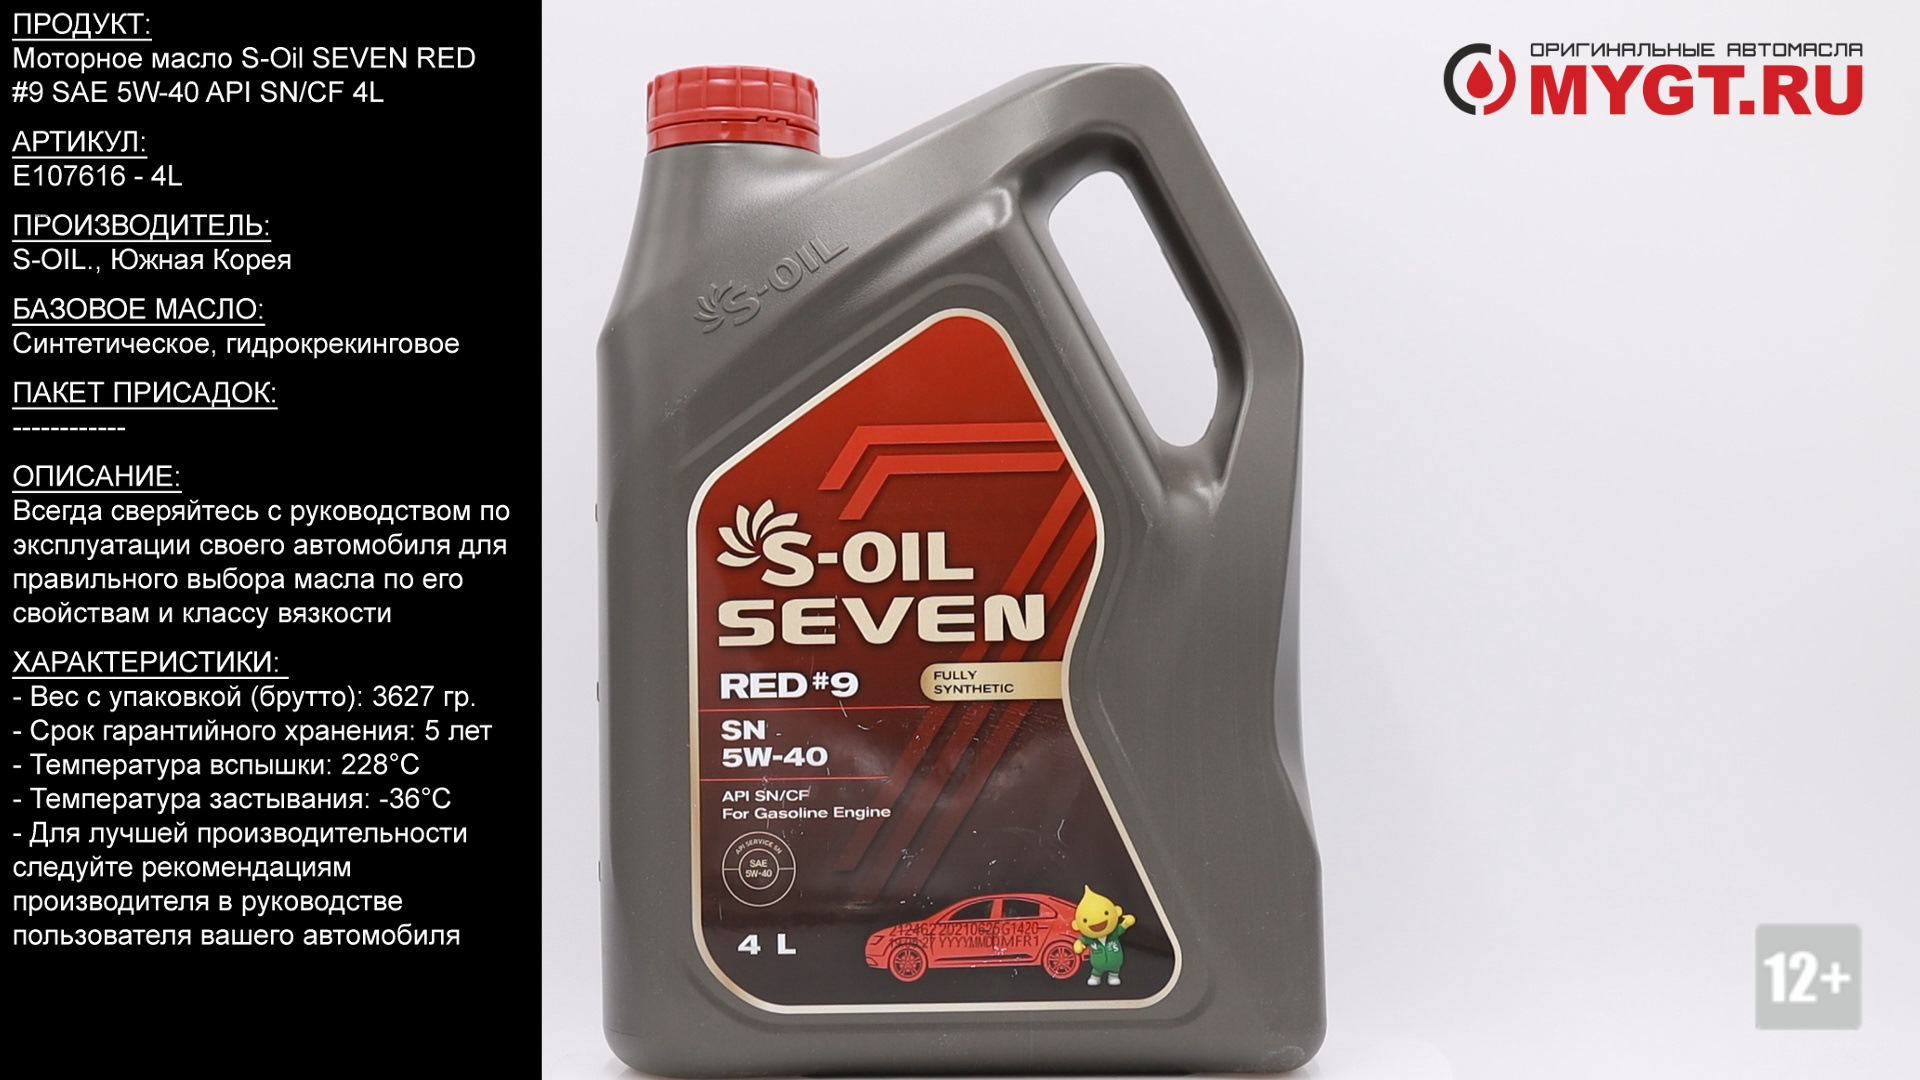 Масло моторное 5w40 бензин. S Oil Seven Red 9 SN 5w40 4л. S-Oil 7 Red #9 SN 5w40. S Oil Seven Red 9 5w40 SP 1л. Моторное масло s-Oil Seven red9.